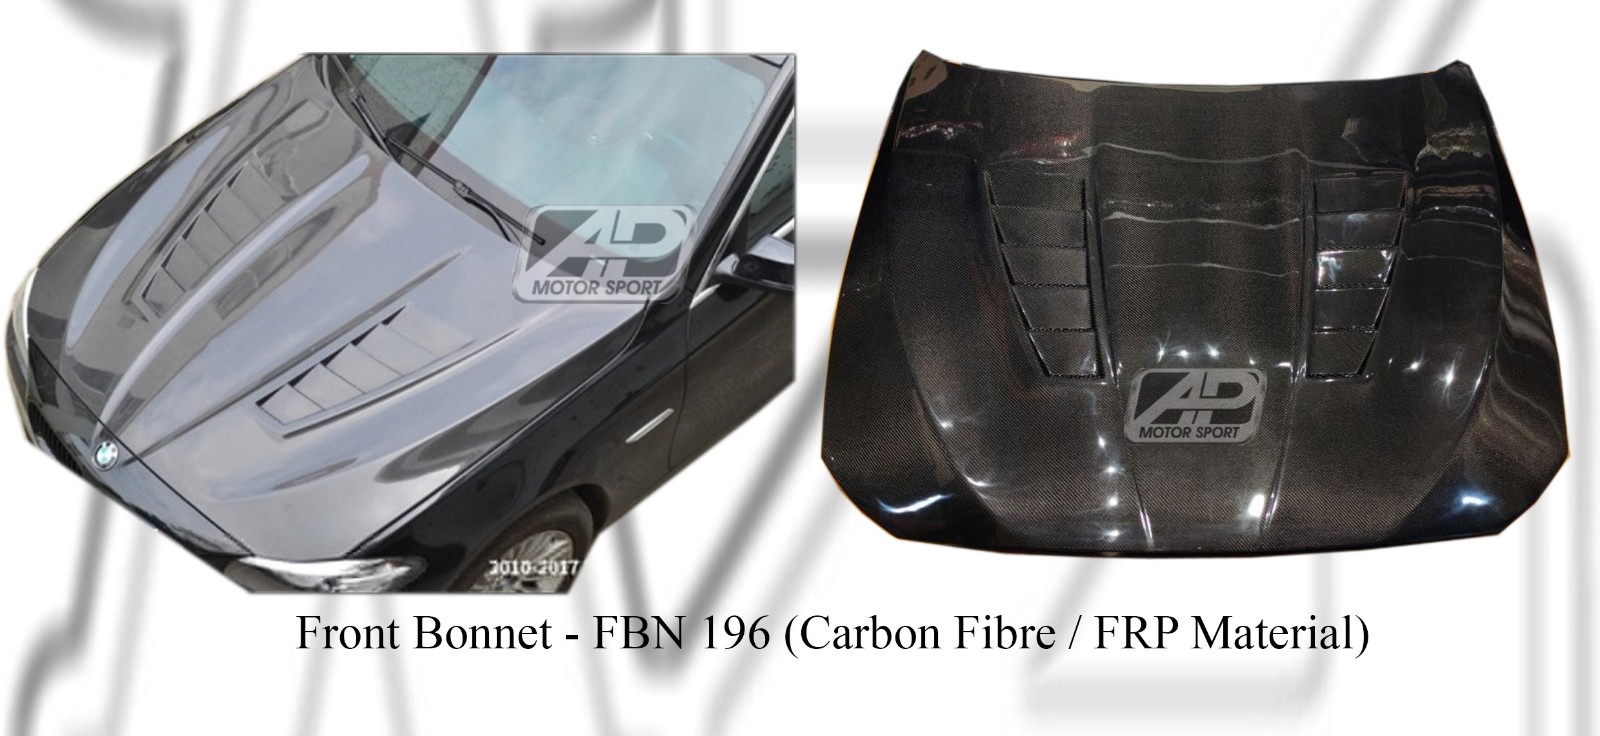 BMW 5 Series F10 Front Bonnet (Carbon Fibre / FRP Material) 